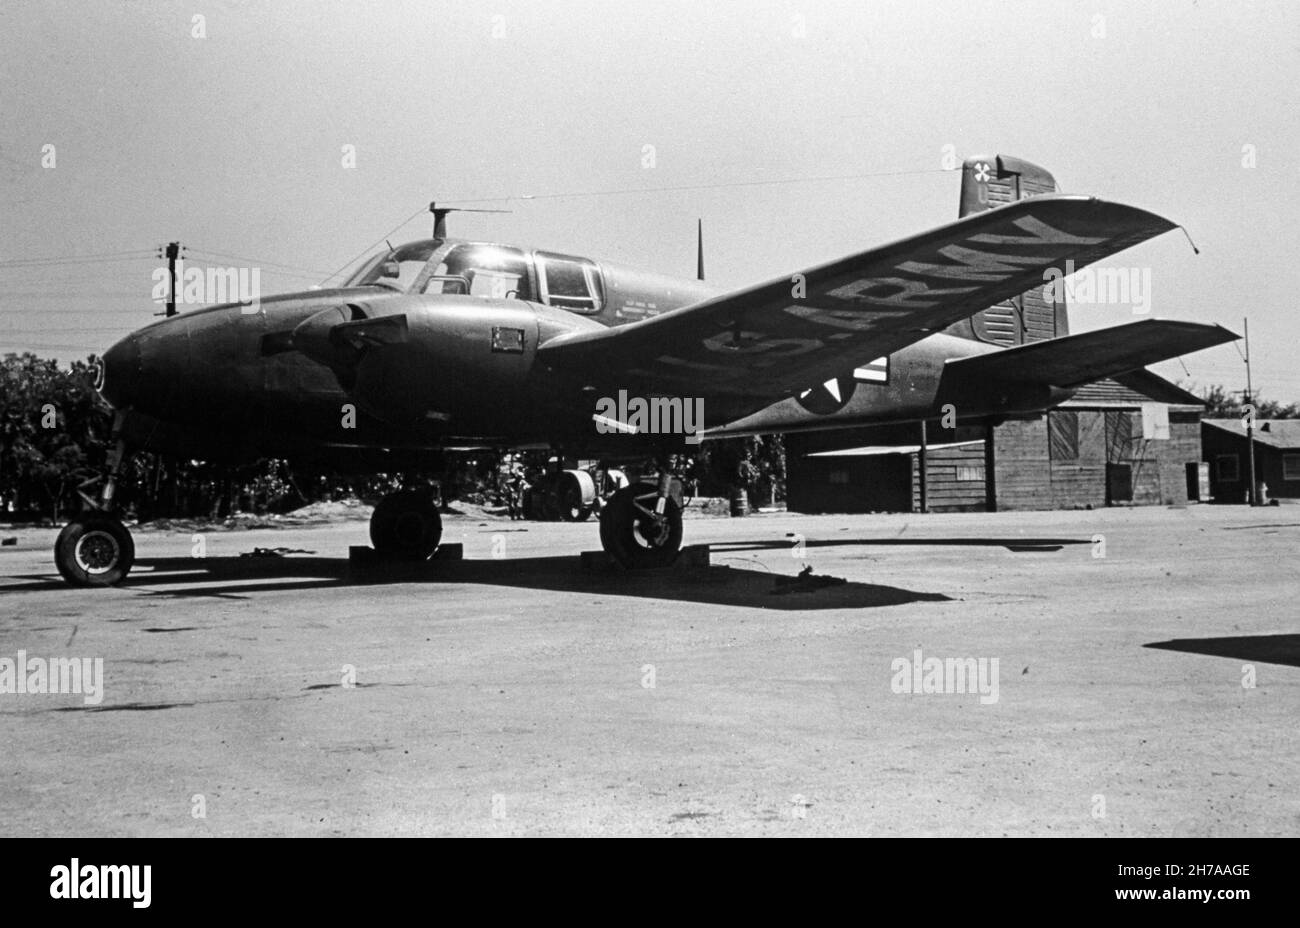 Ein Foto mit einer Buche L-23A Seminole, Seriennummer 52-6187, der United States Army, aufgenommen auf Airstrip A-2 in der Nähe von Seoul während des Koreakrieges, 1953 oder 1954. Stockfoto